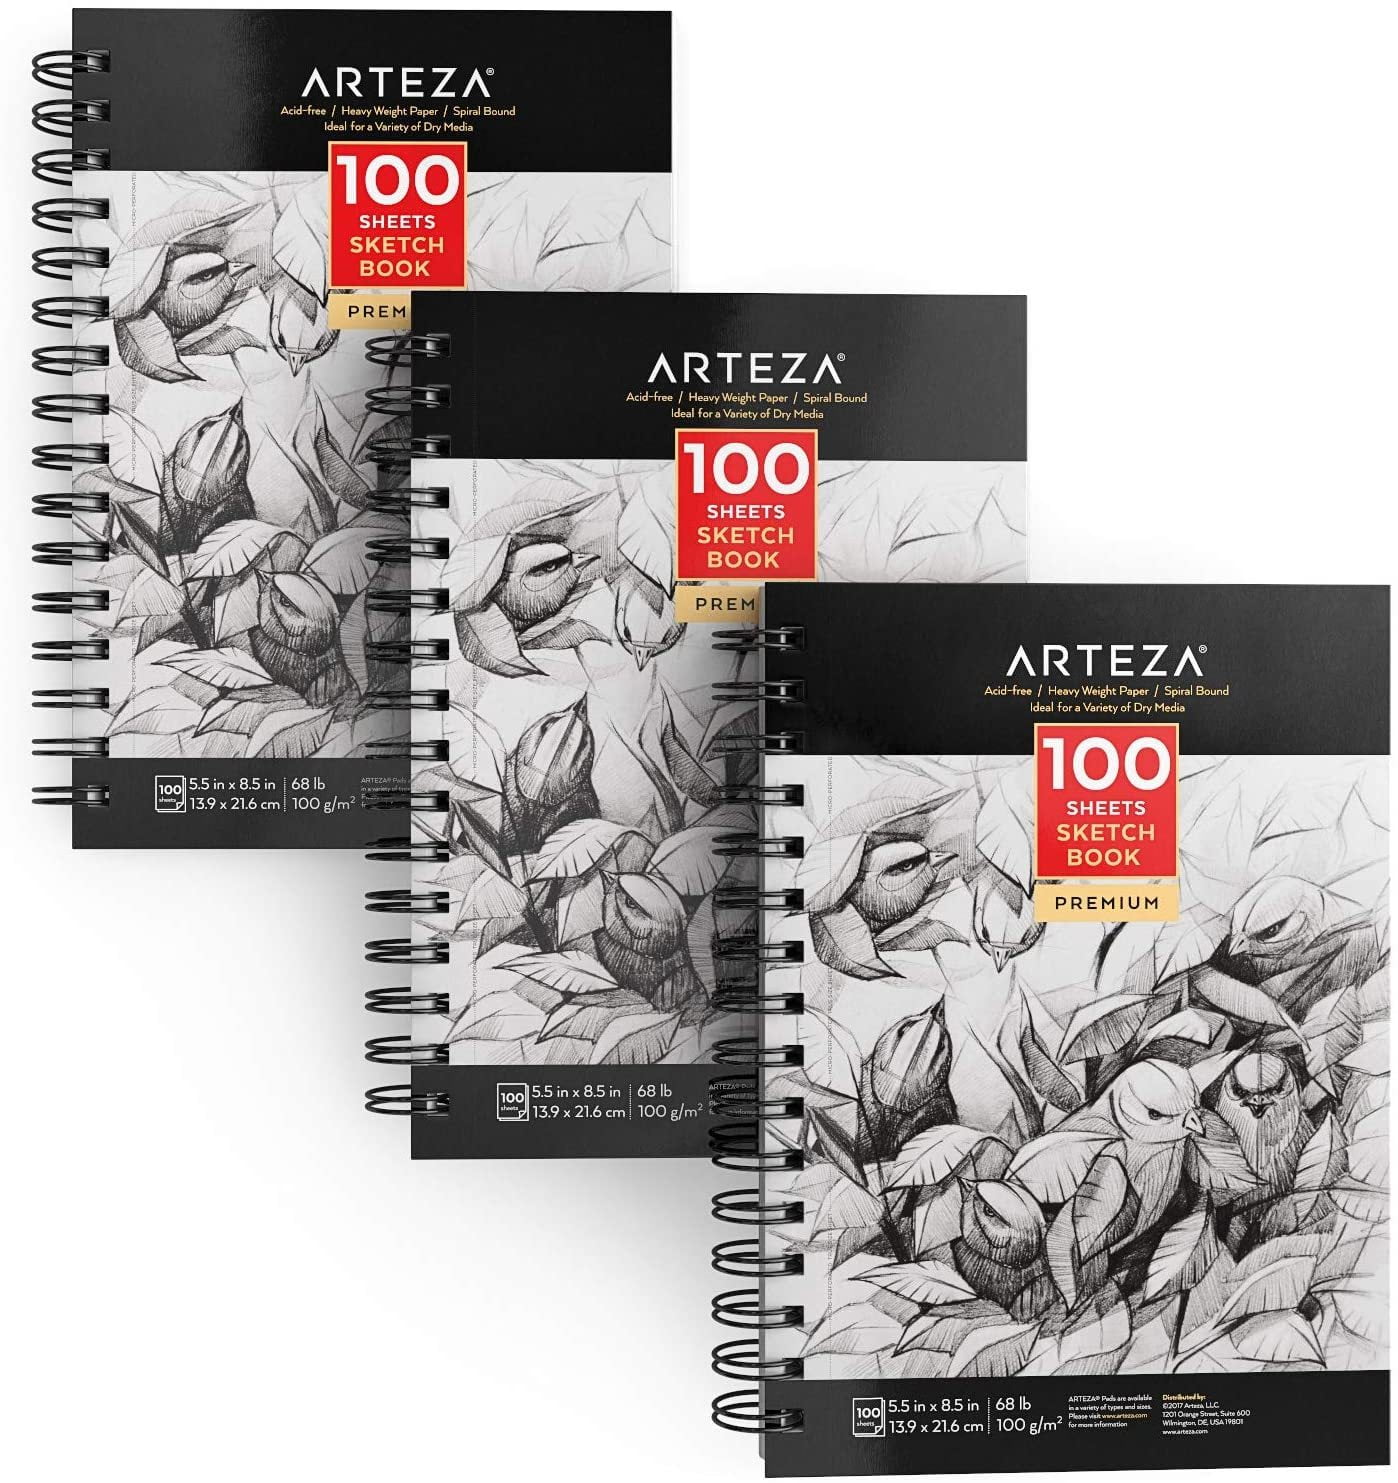 5.5 x 8.5 Sketchbook - Mini Sketch Book - 100 Sheets (68 lb/100gsm